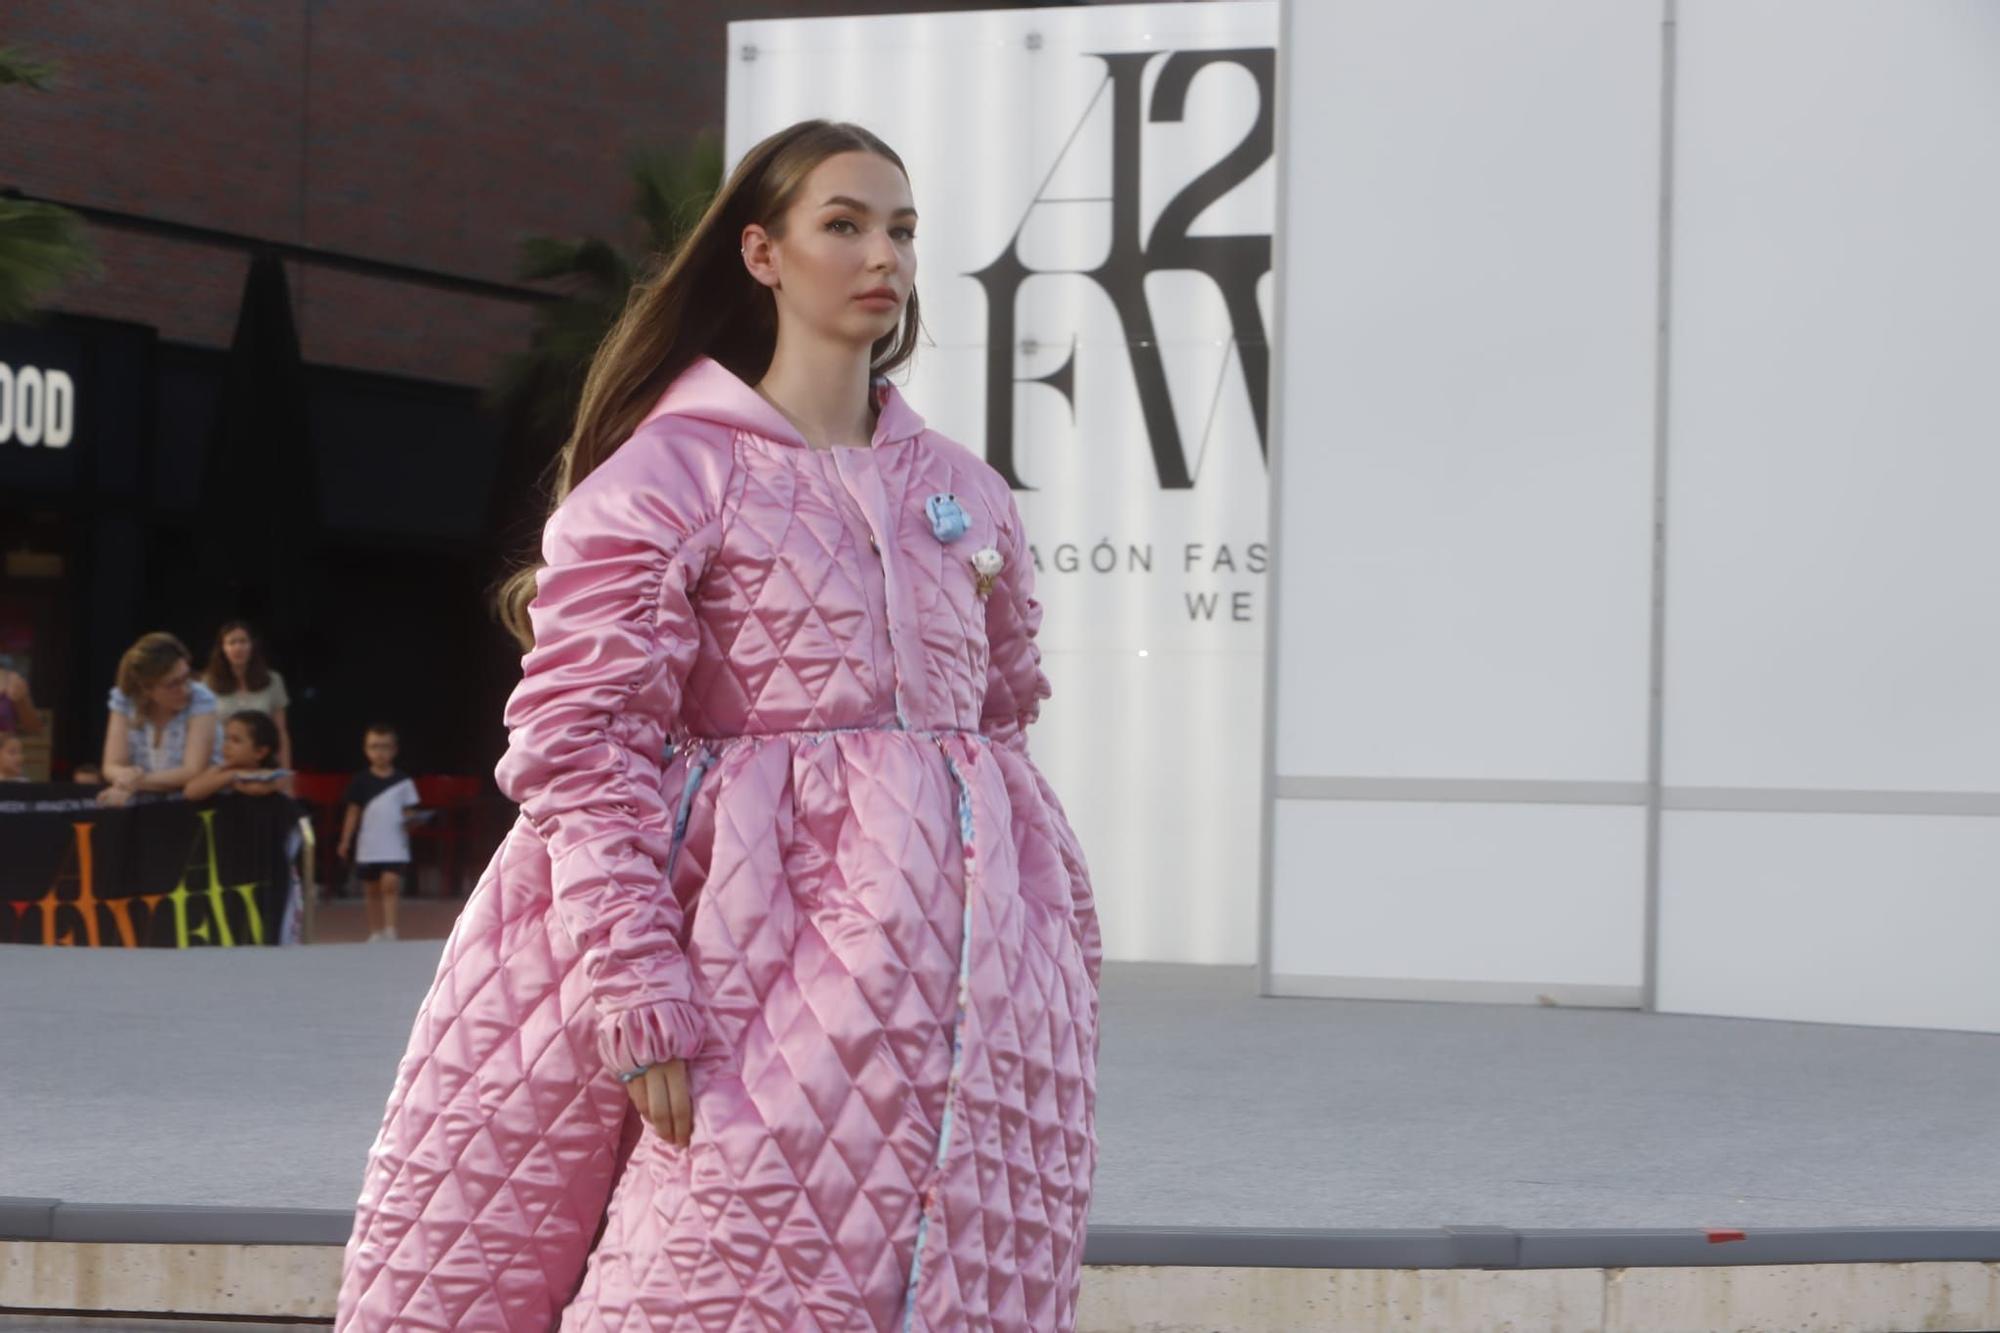 FOTOGALERÍA | Aragón Fashion Week 2022, este viernes en Zaragoza